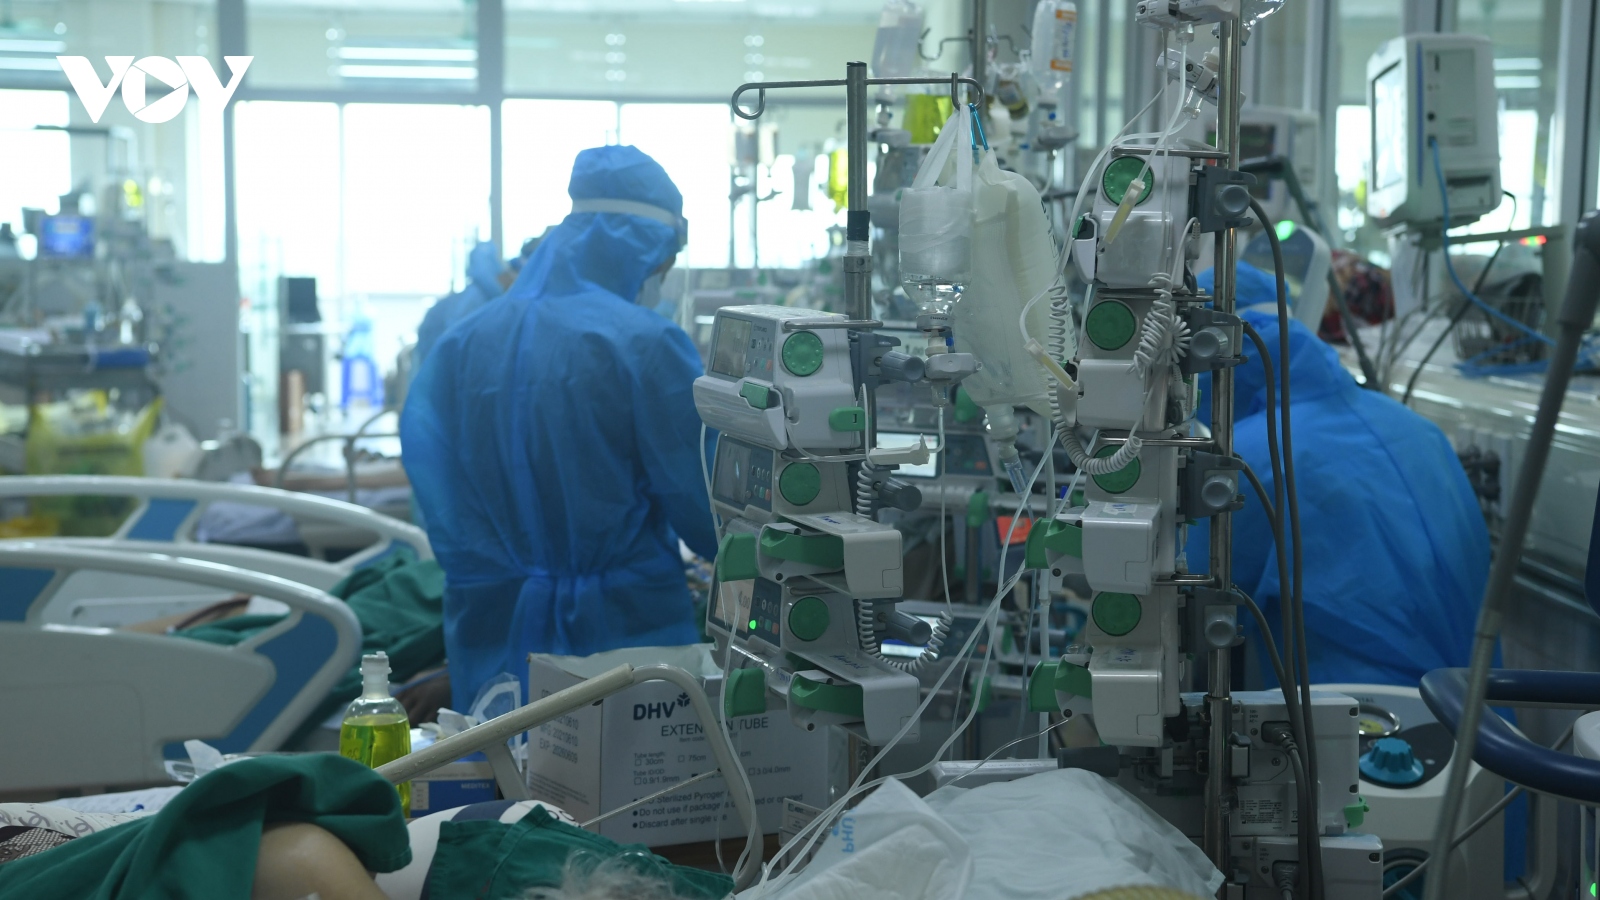 F0 tiếp tục tăng cao, Hà Nội được Bộ Y tế cấp phát khẩn 200.000 viên Molnupiravir